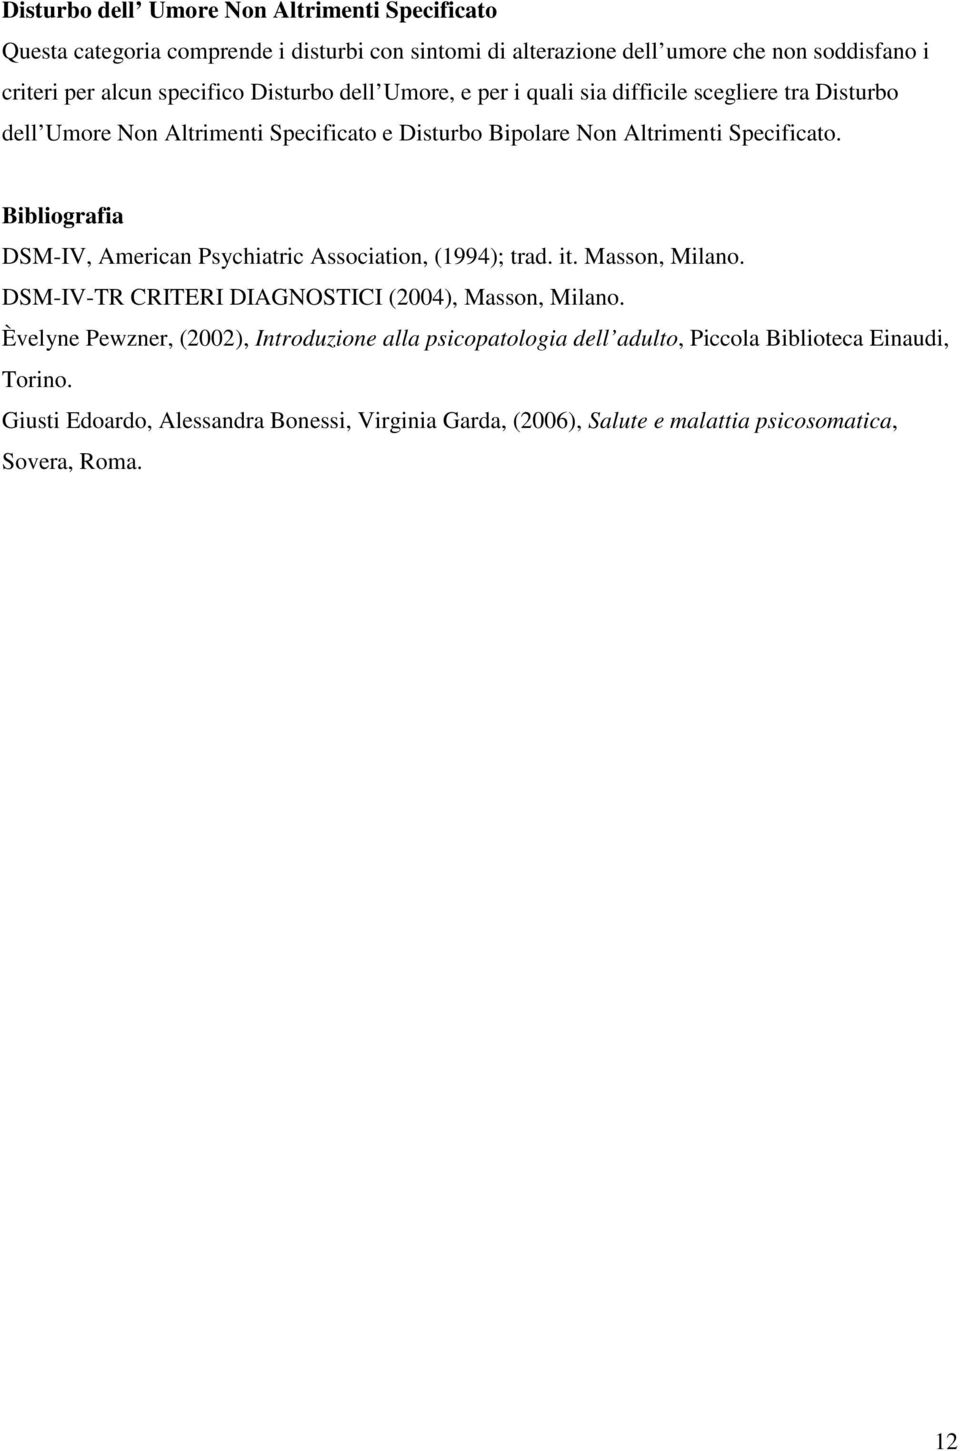 Bibliografia DSM-IV, American Psychiatric Association, (1994); trad. it. Masson, Milano. DSM-IV-TR CRITERI DIAGNOSTICI (2004), Masson, Milano.